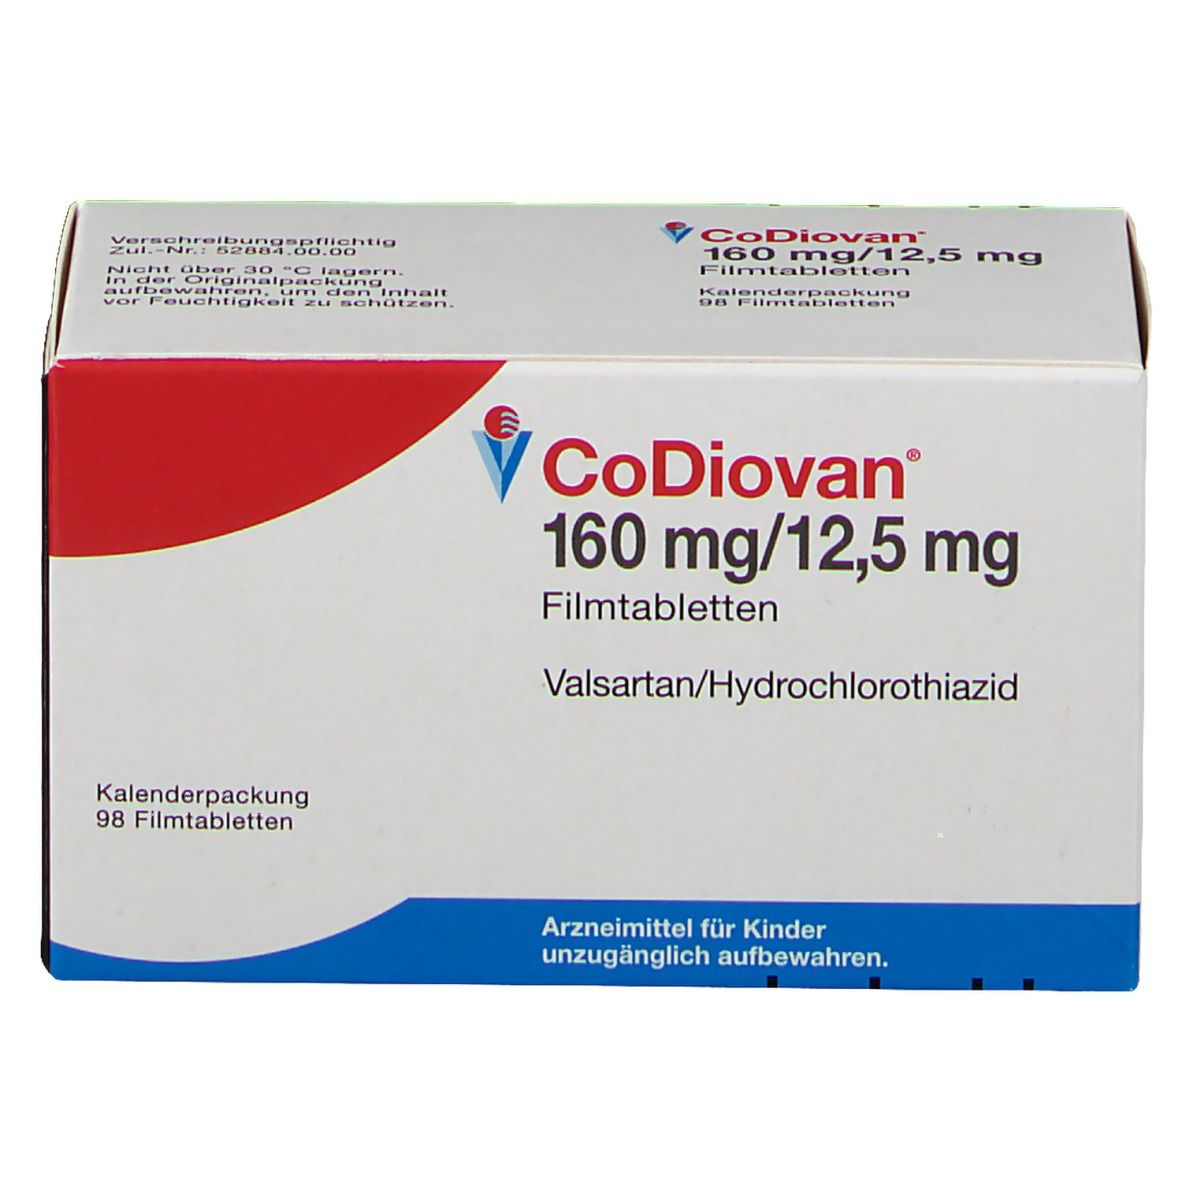 CoDiovan® 160 mg/12,5 mg